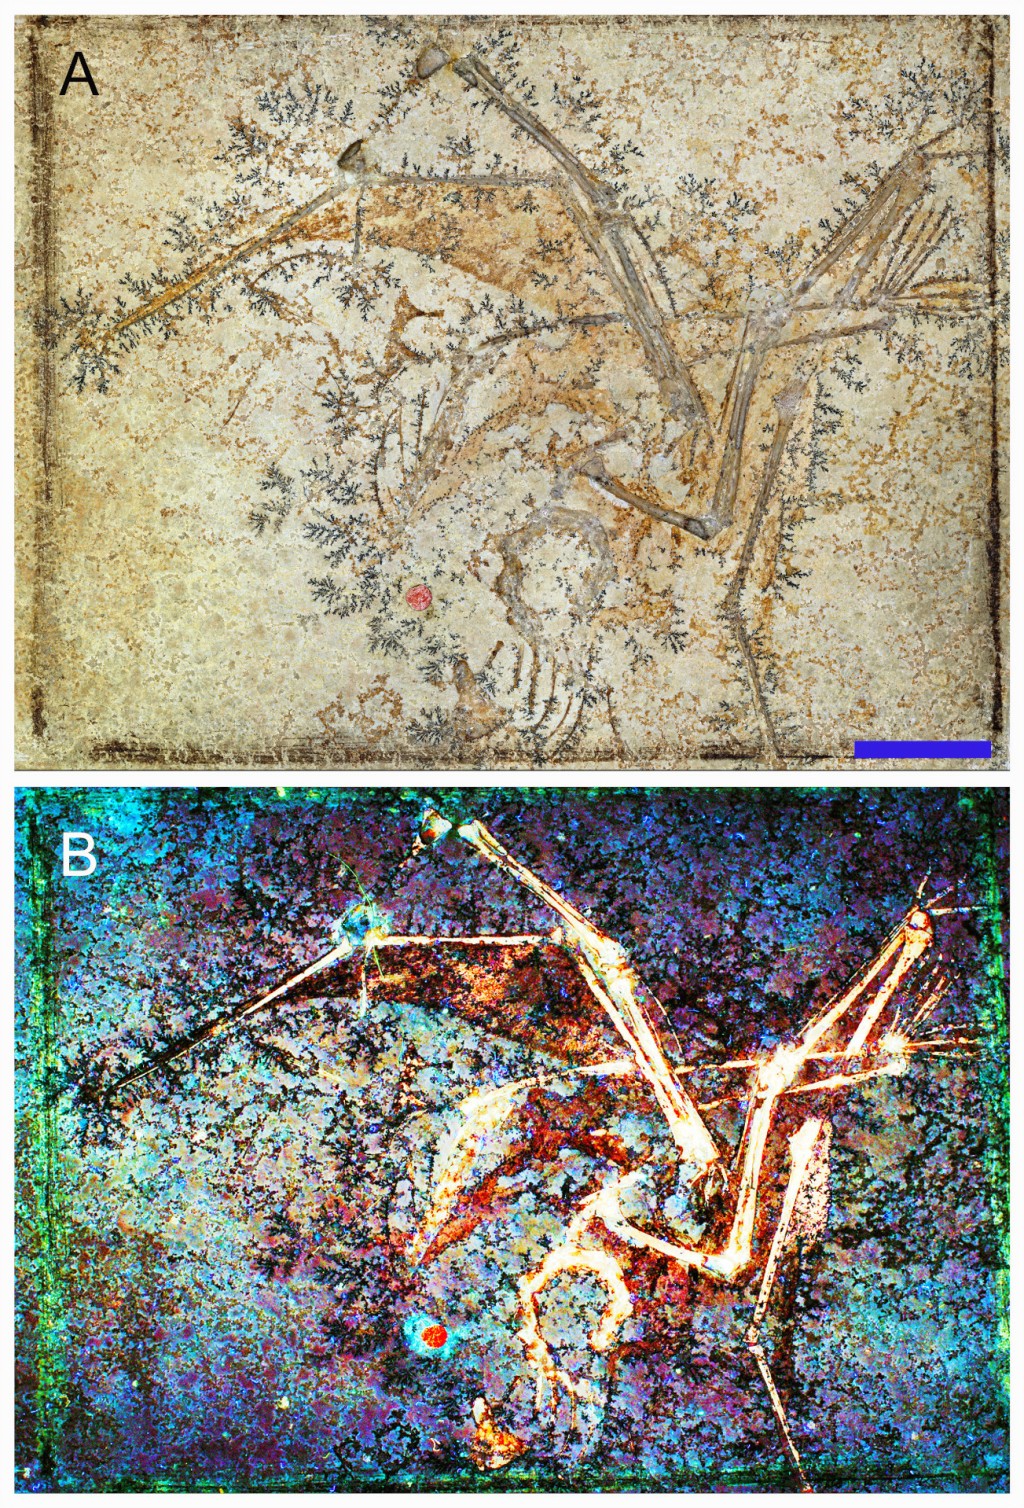 小型翼龍Aurorazhdarchid化石顯示其骨骼及相關軟組織。中大圖片